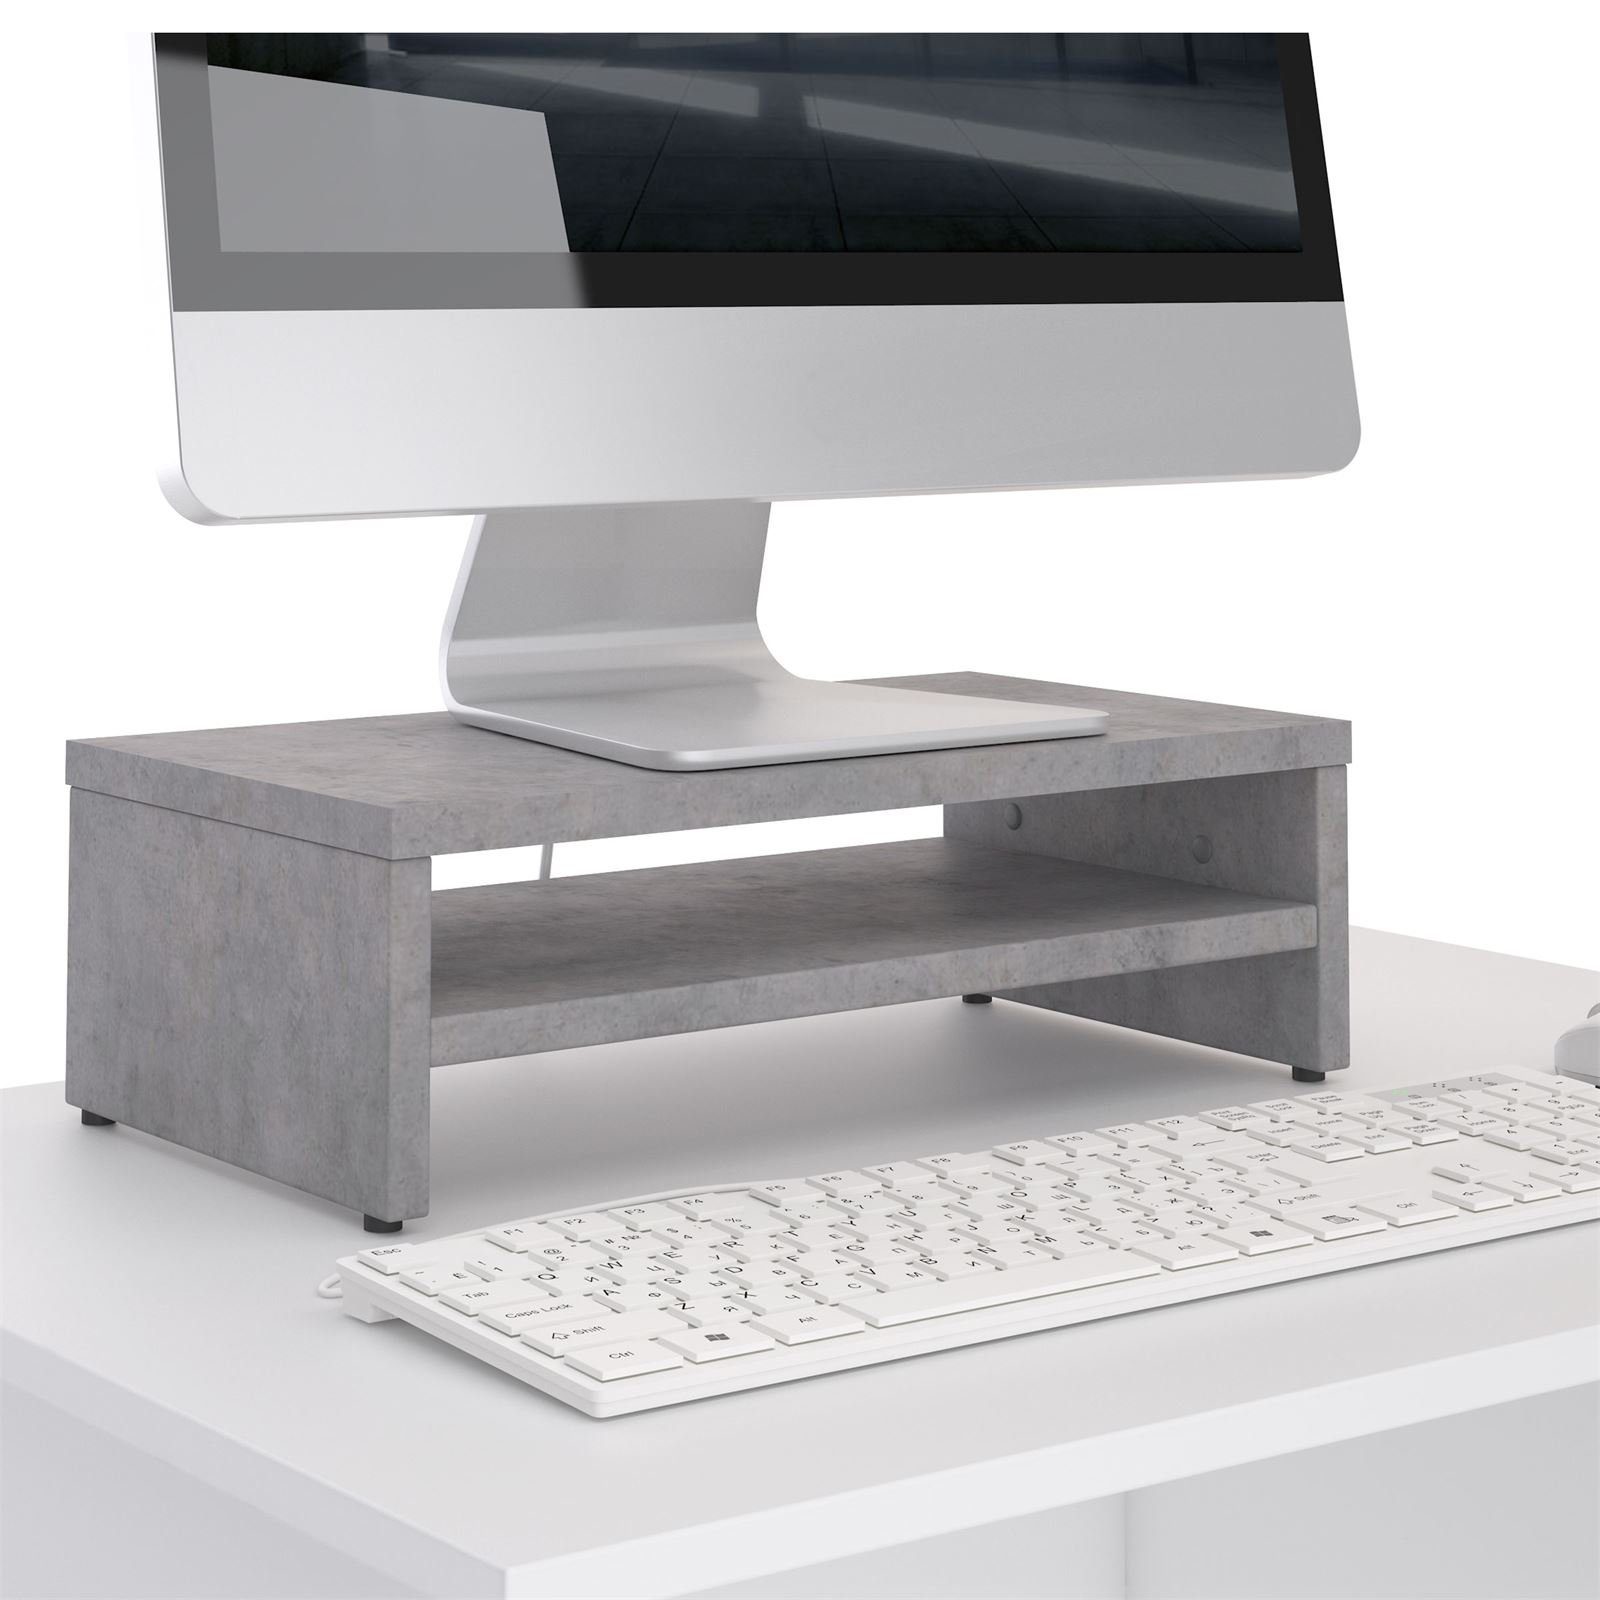 inkl. Monitorerhöhung Bildschirmaufsatz Monitorständer CARO-Möbel Schreibtischaufsatz Be SUBIDA, Ablagefach